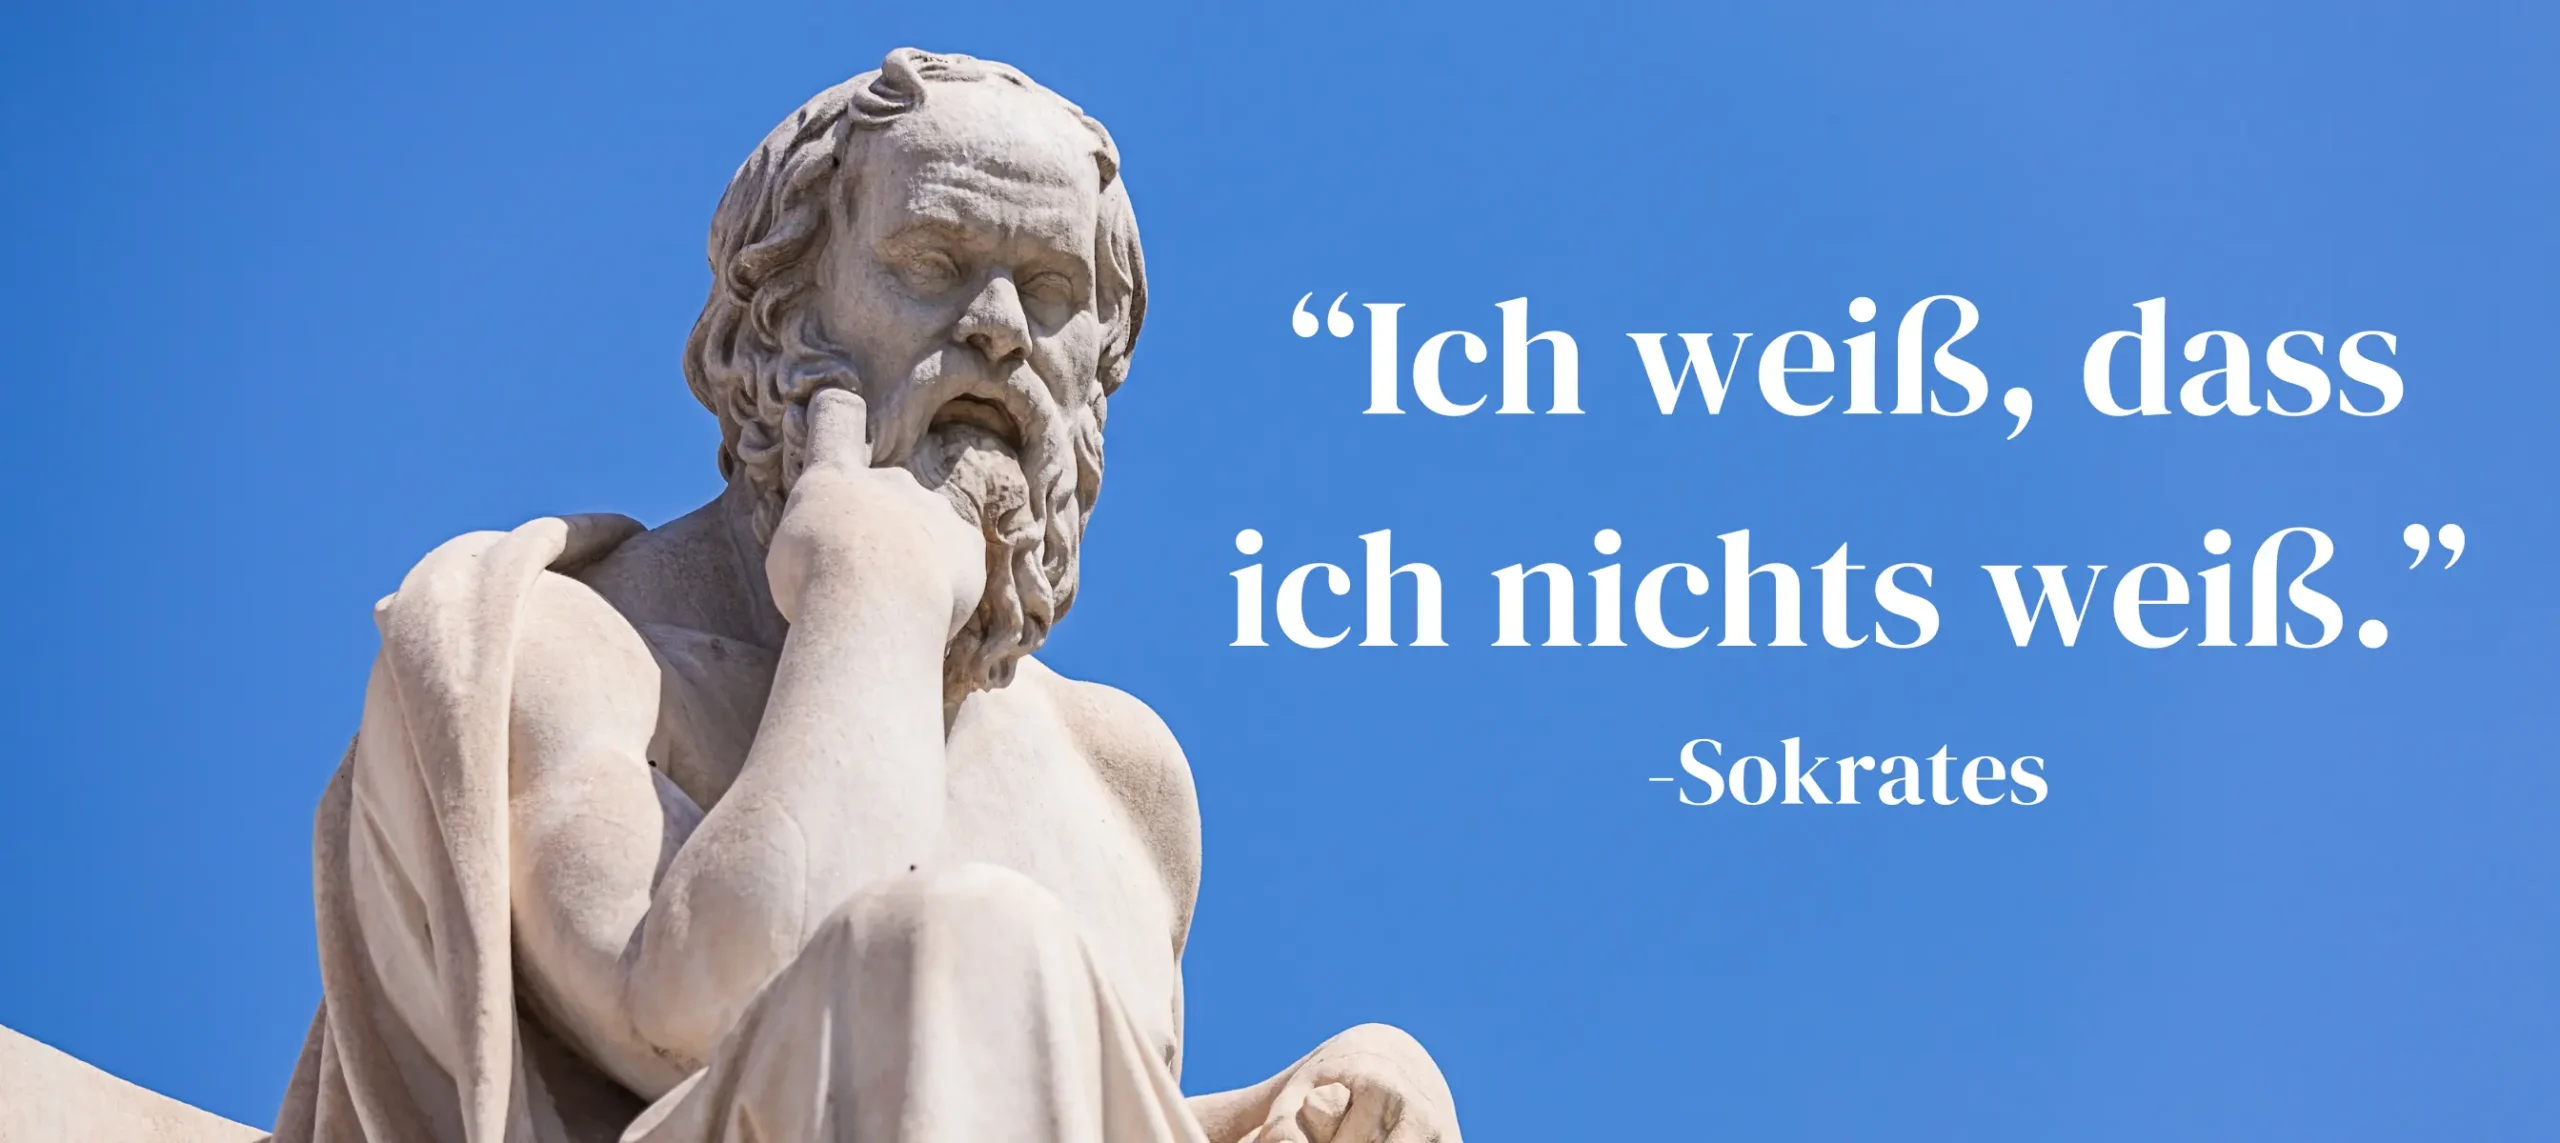 Das Bild zeigt einen Statue von Sokrates und eines seiner Berühmten Zitate.